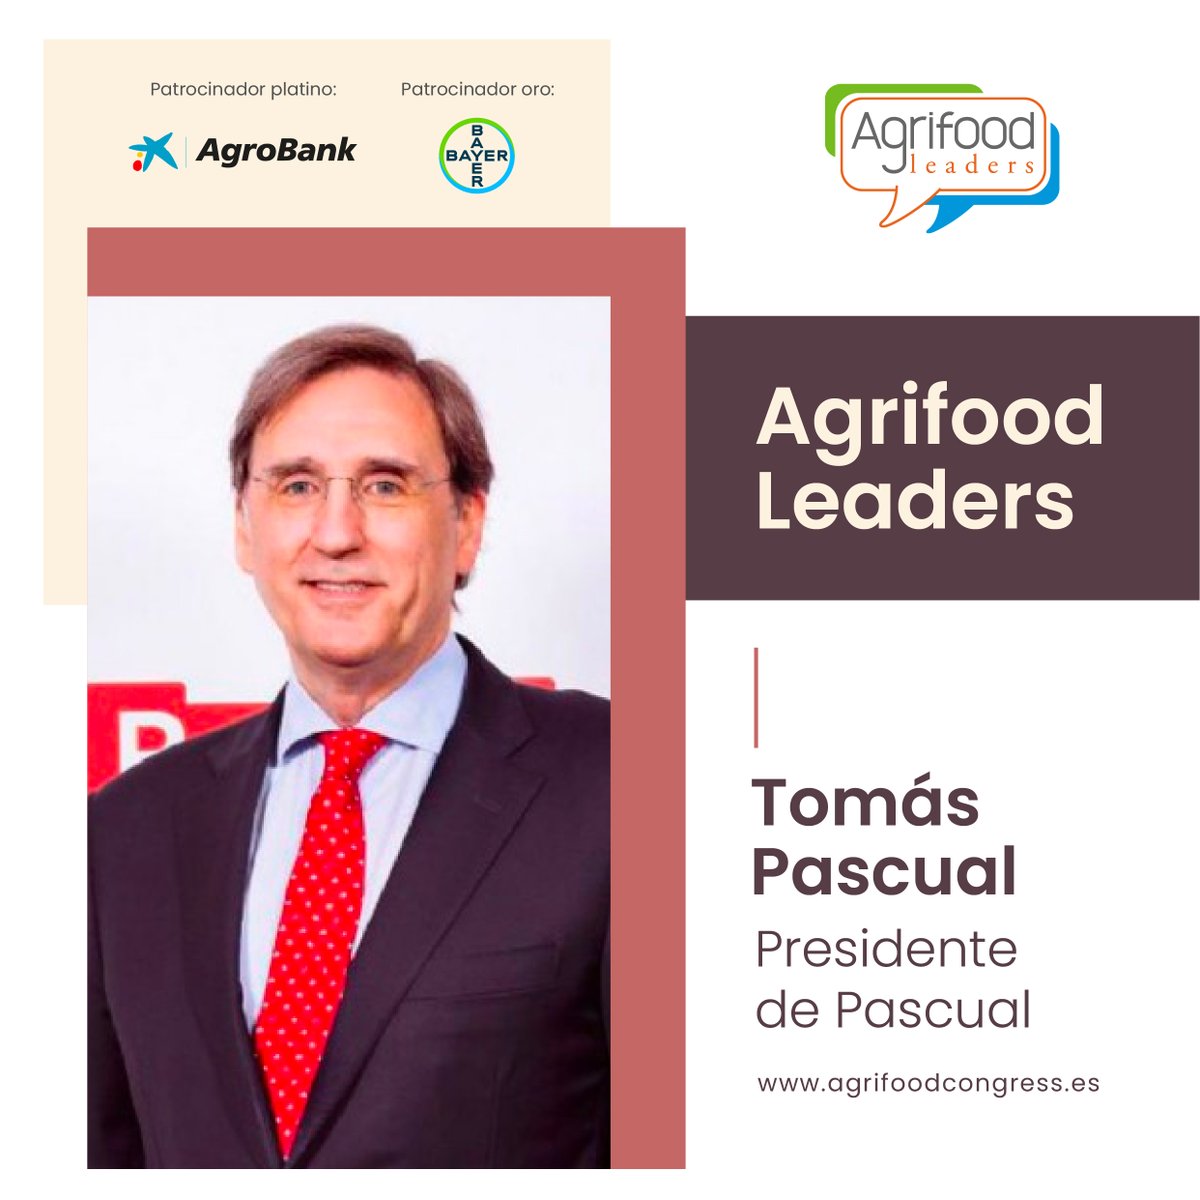 ¿Conoces a los #AgrifoodLeaders? Tomás Pascual, Presidente de @Pascual , forma parte de la inciativa🥛🧃⬇️

agrifoodcongress.es/key/leaders/to…